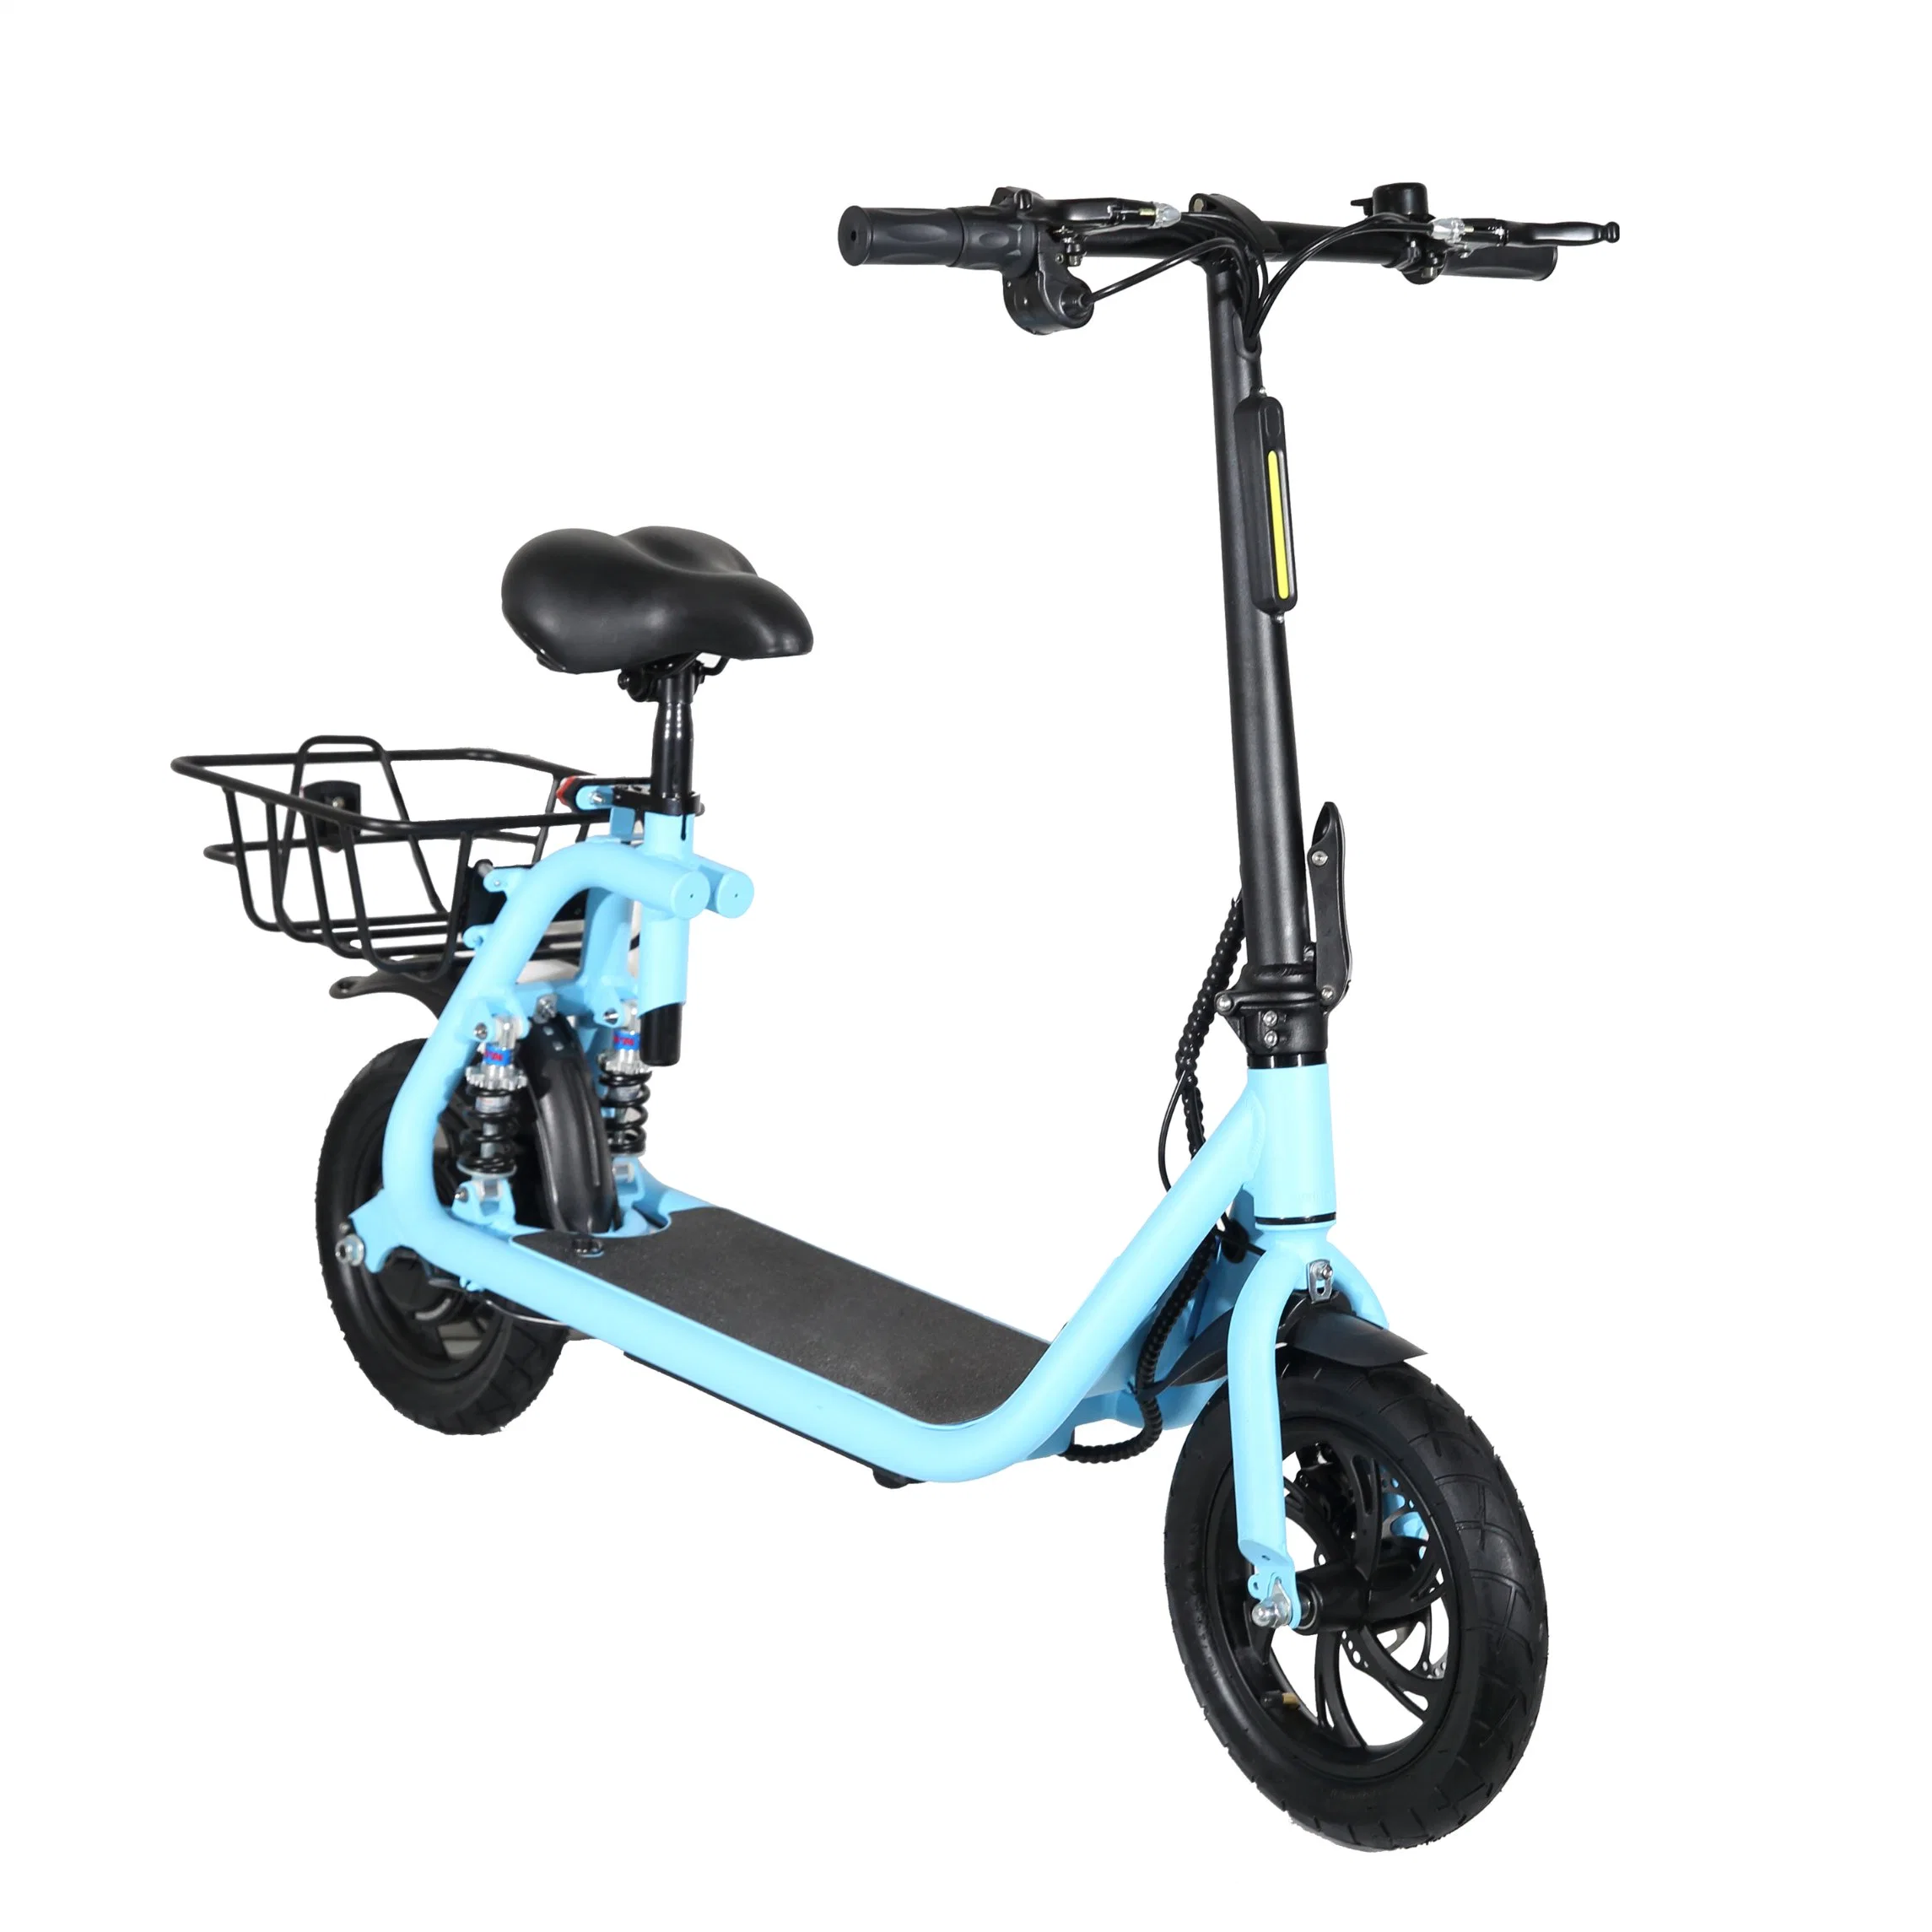 2022 новый продукт на велосипеде велосипед электрический жир велосипед пляж Crusier /электрический велосипед 48V дорожного велосипеда с электроприводом 36V500W